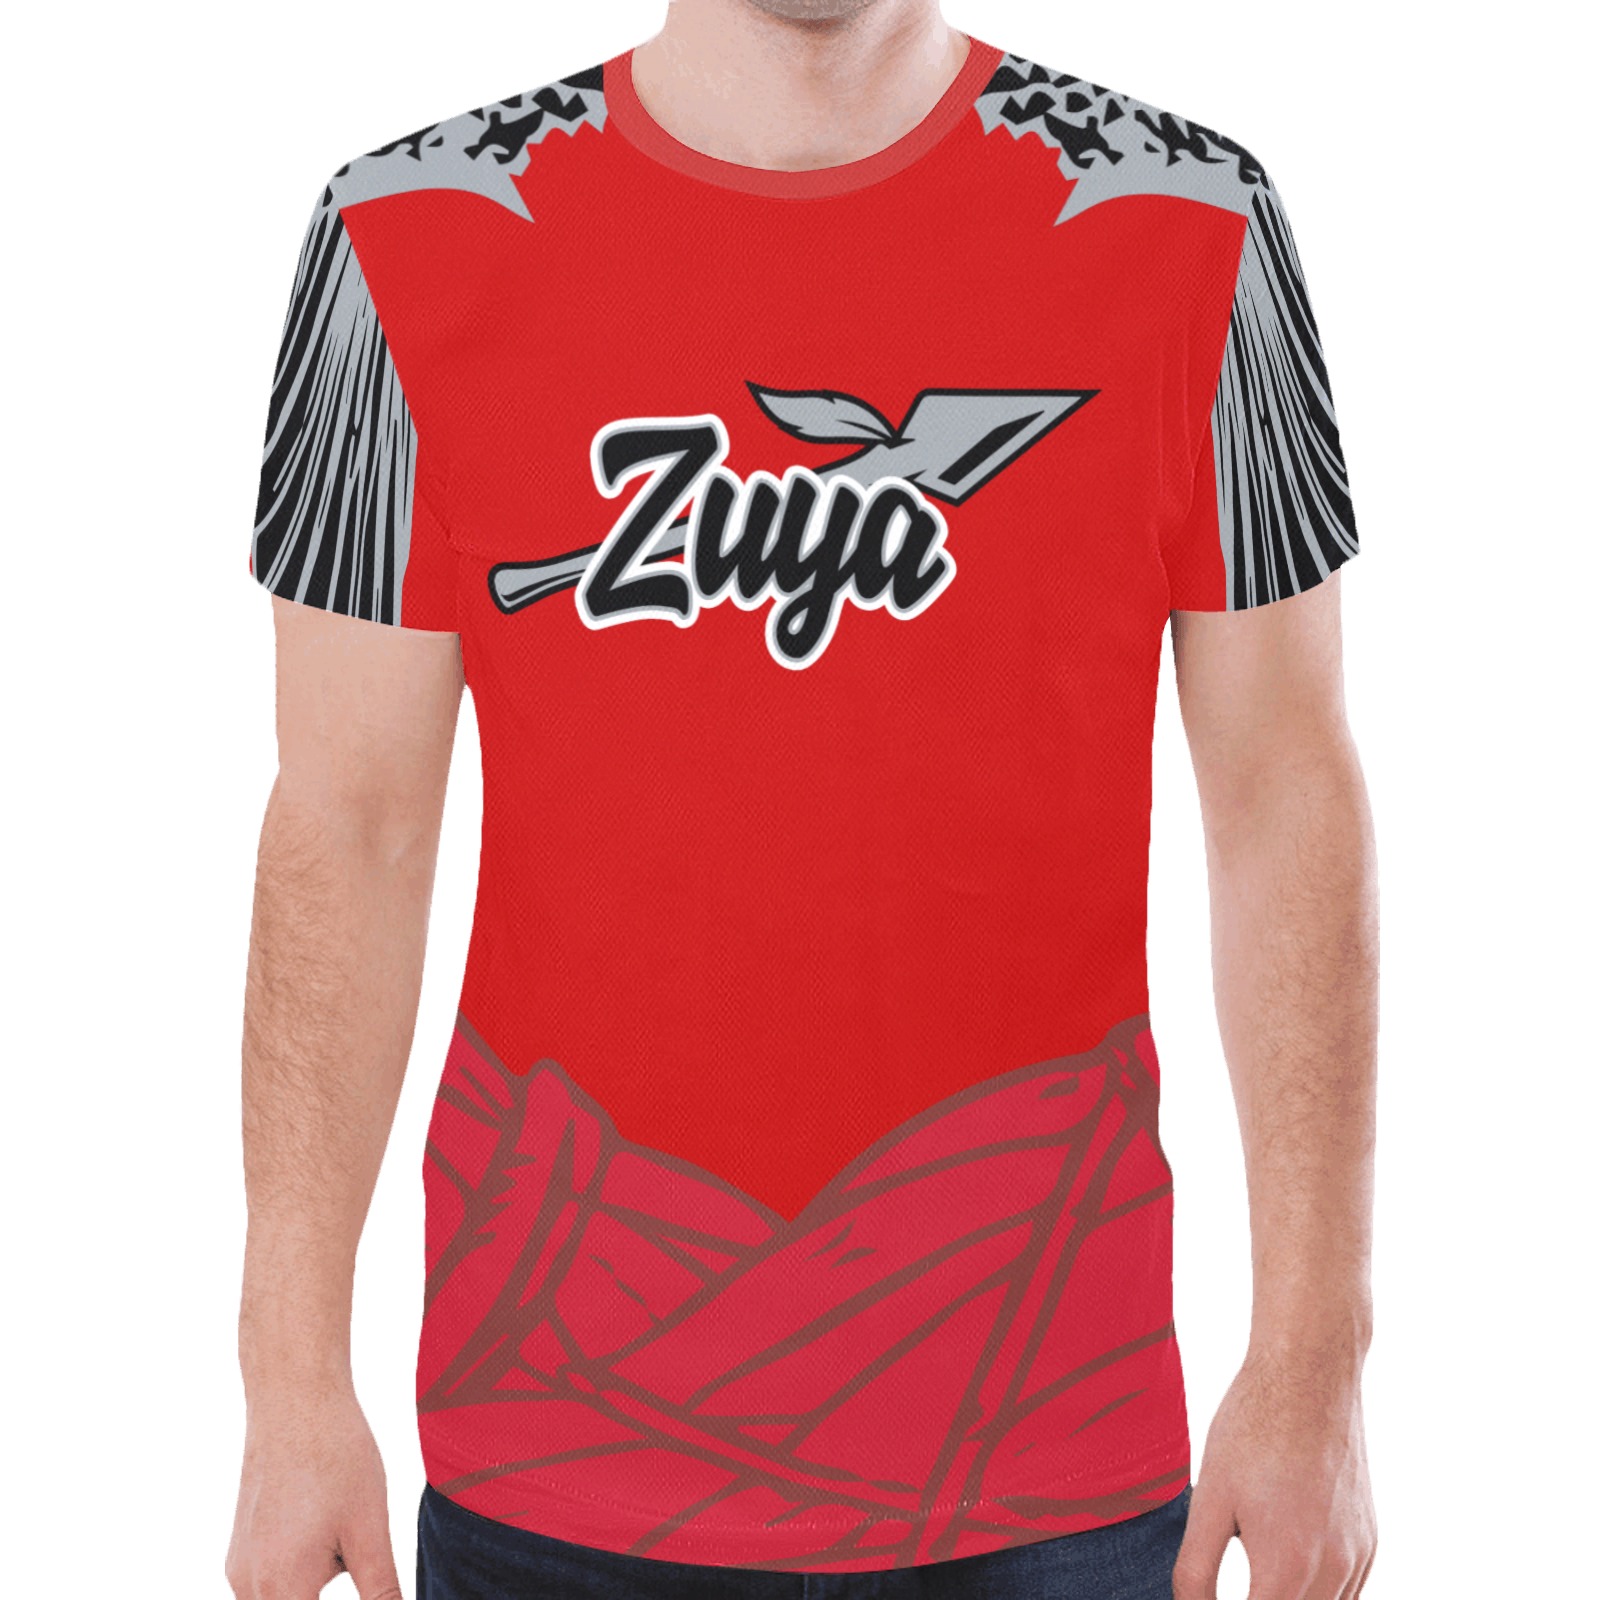 zuya-8-L New All Over Print T-shirt for Men (Model T45)